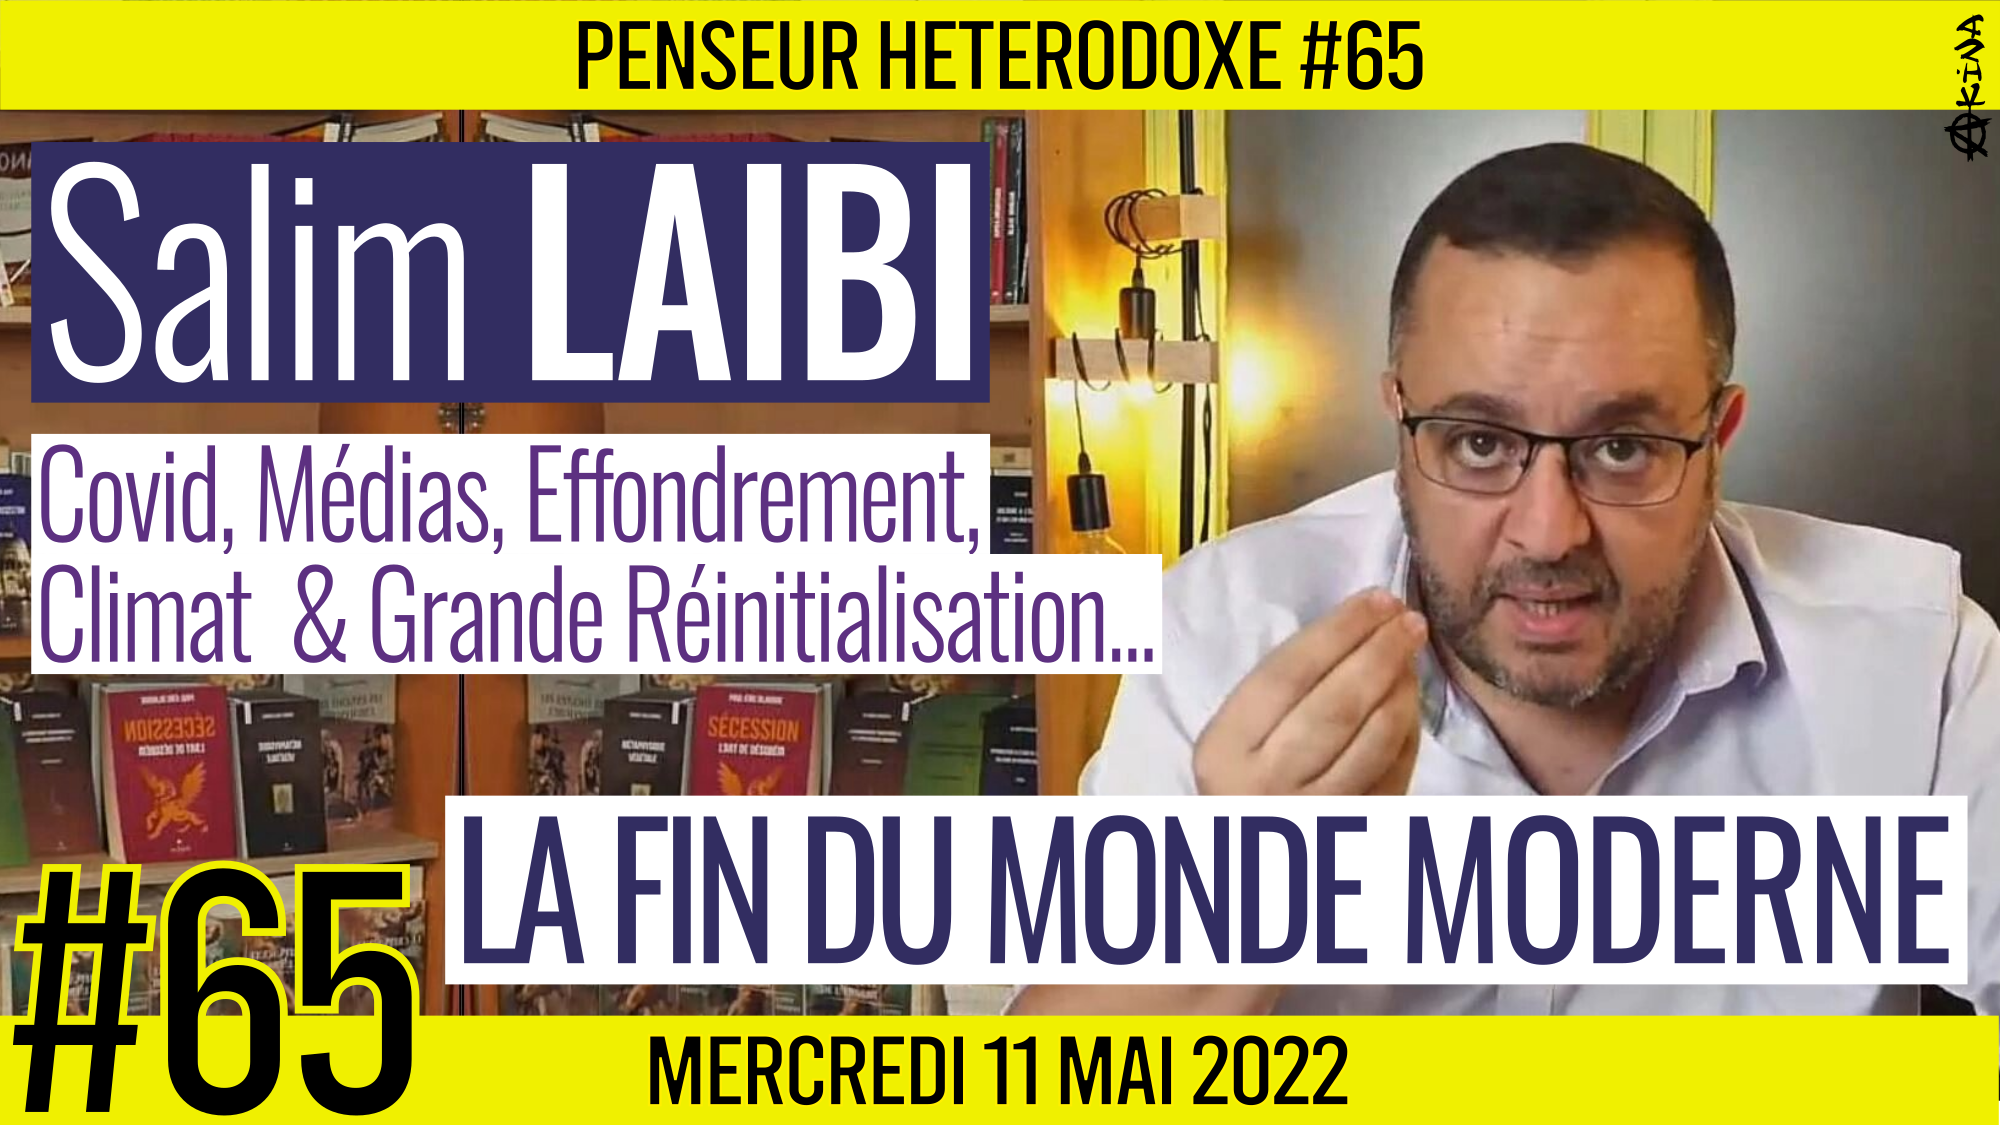 💡 PENSEUR HÉTÉRODOXE #65 🗣 Salim LAIBI 🎯 La fin du monde moderne 📆 11-05-2022